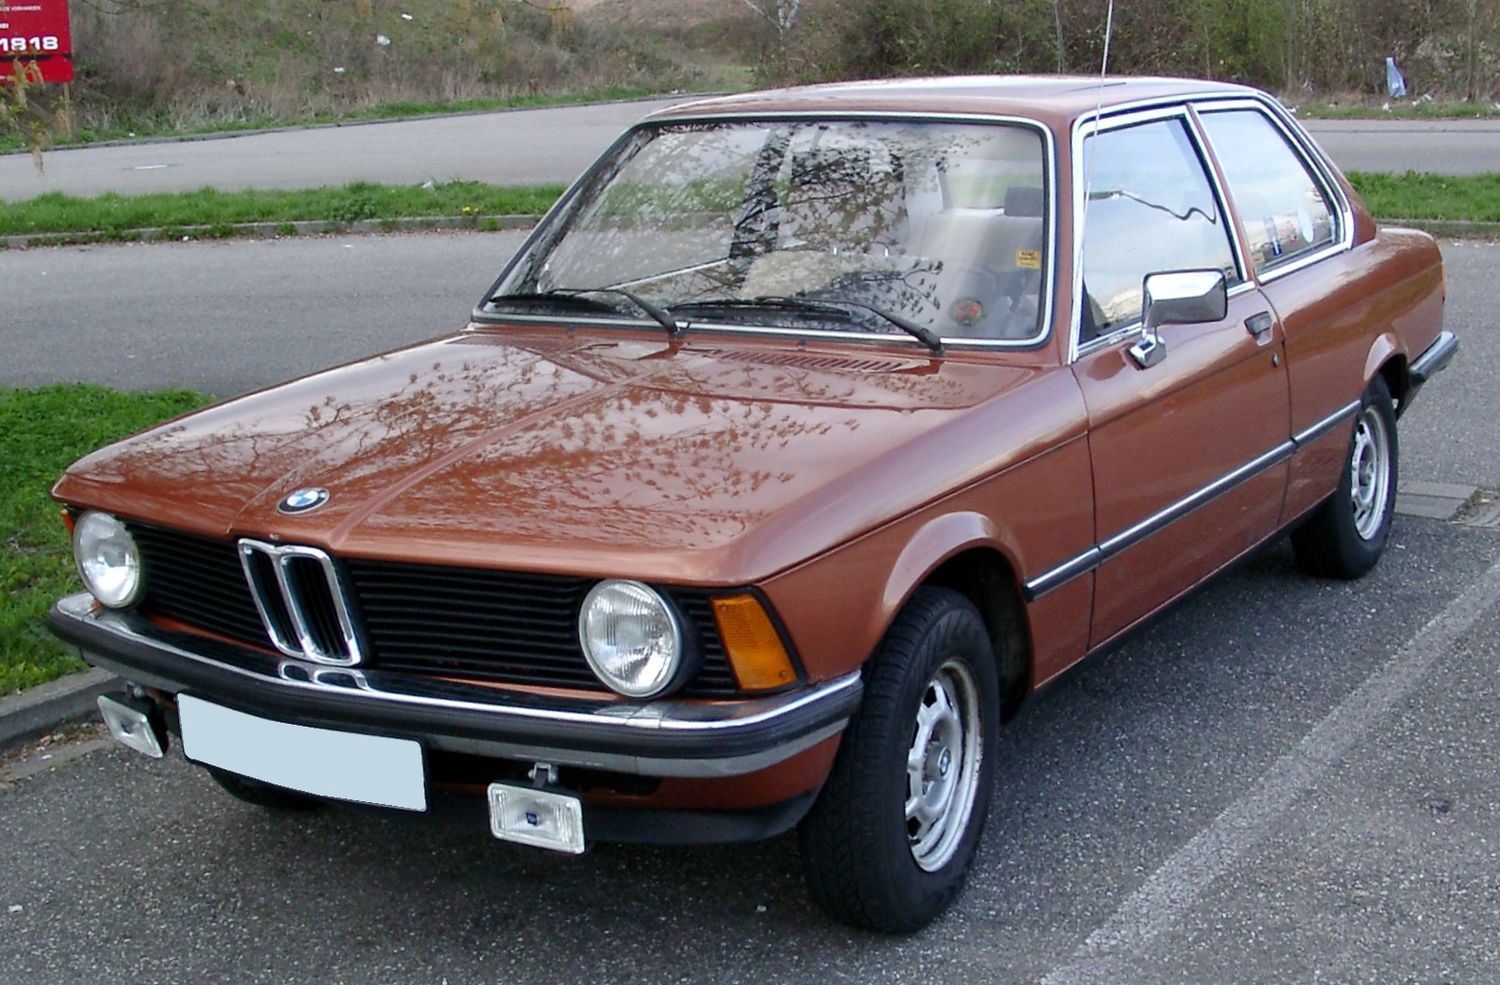 BMW Serie 1: Así ha cambiado desde el 2004